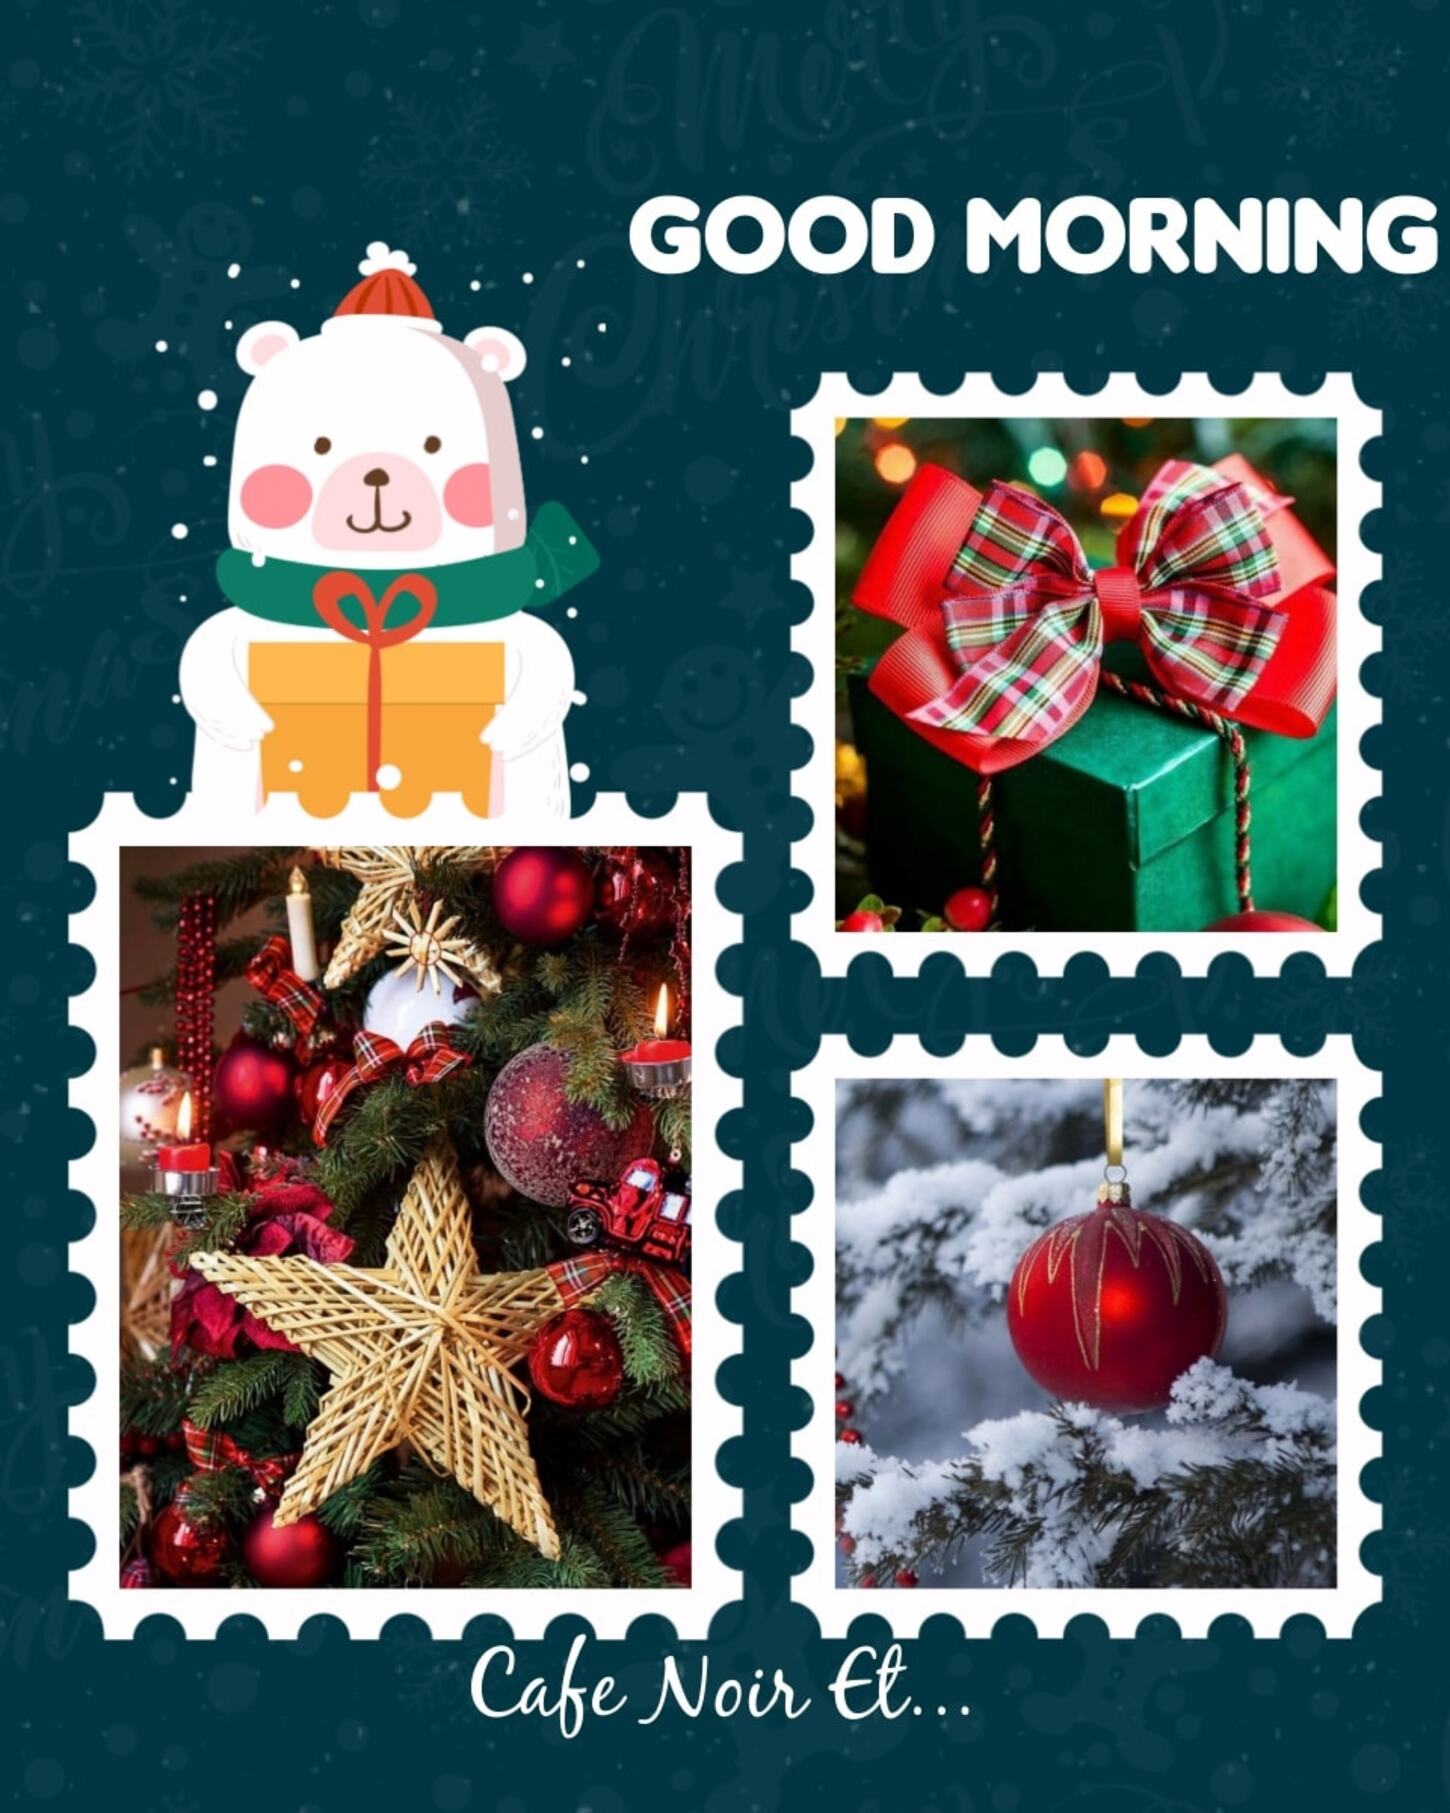 Link e immagini nuove per augurare buongiorno durante il Natale (1)